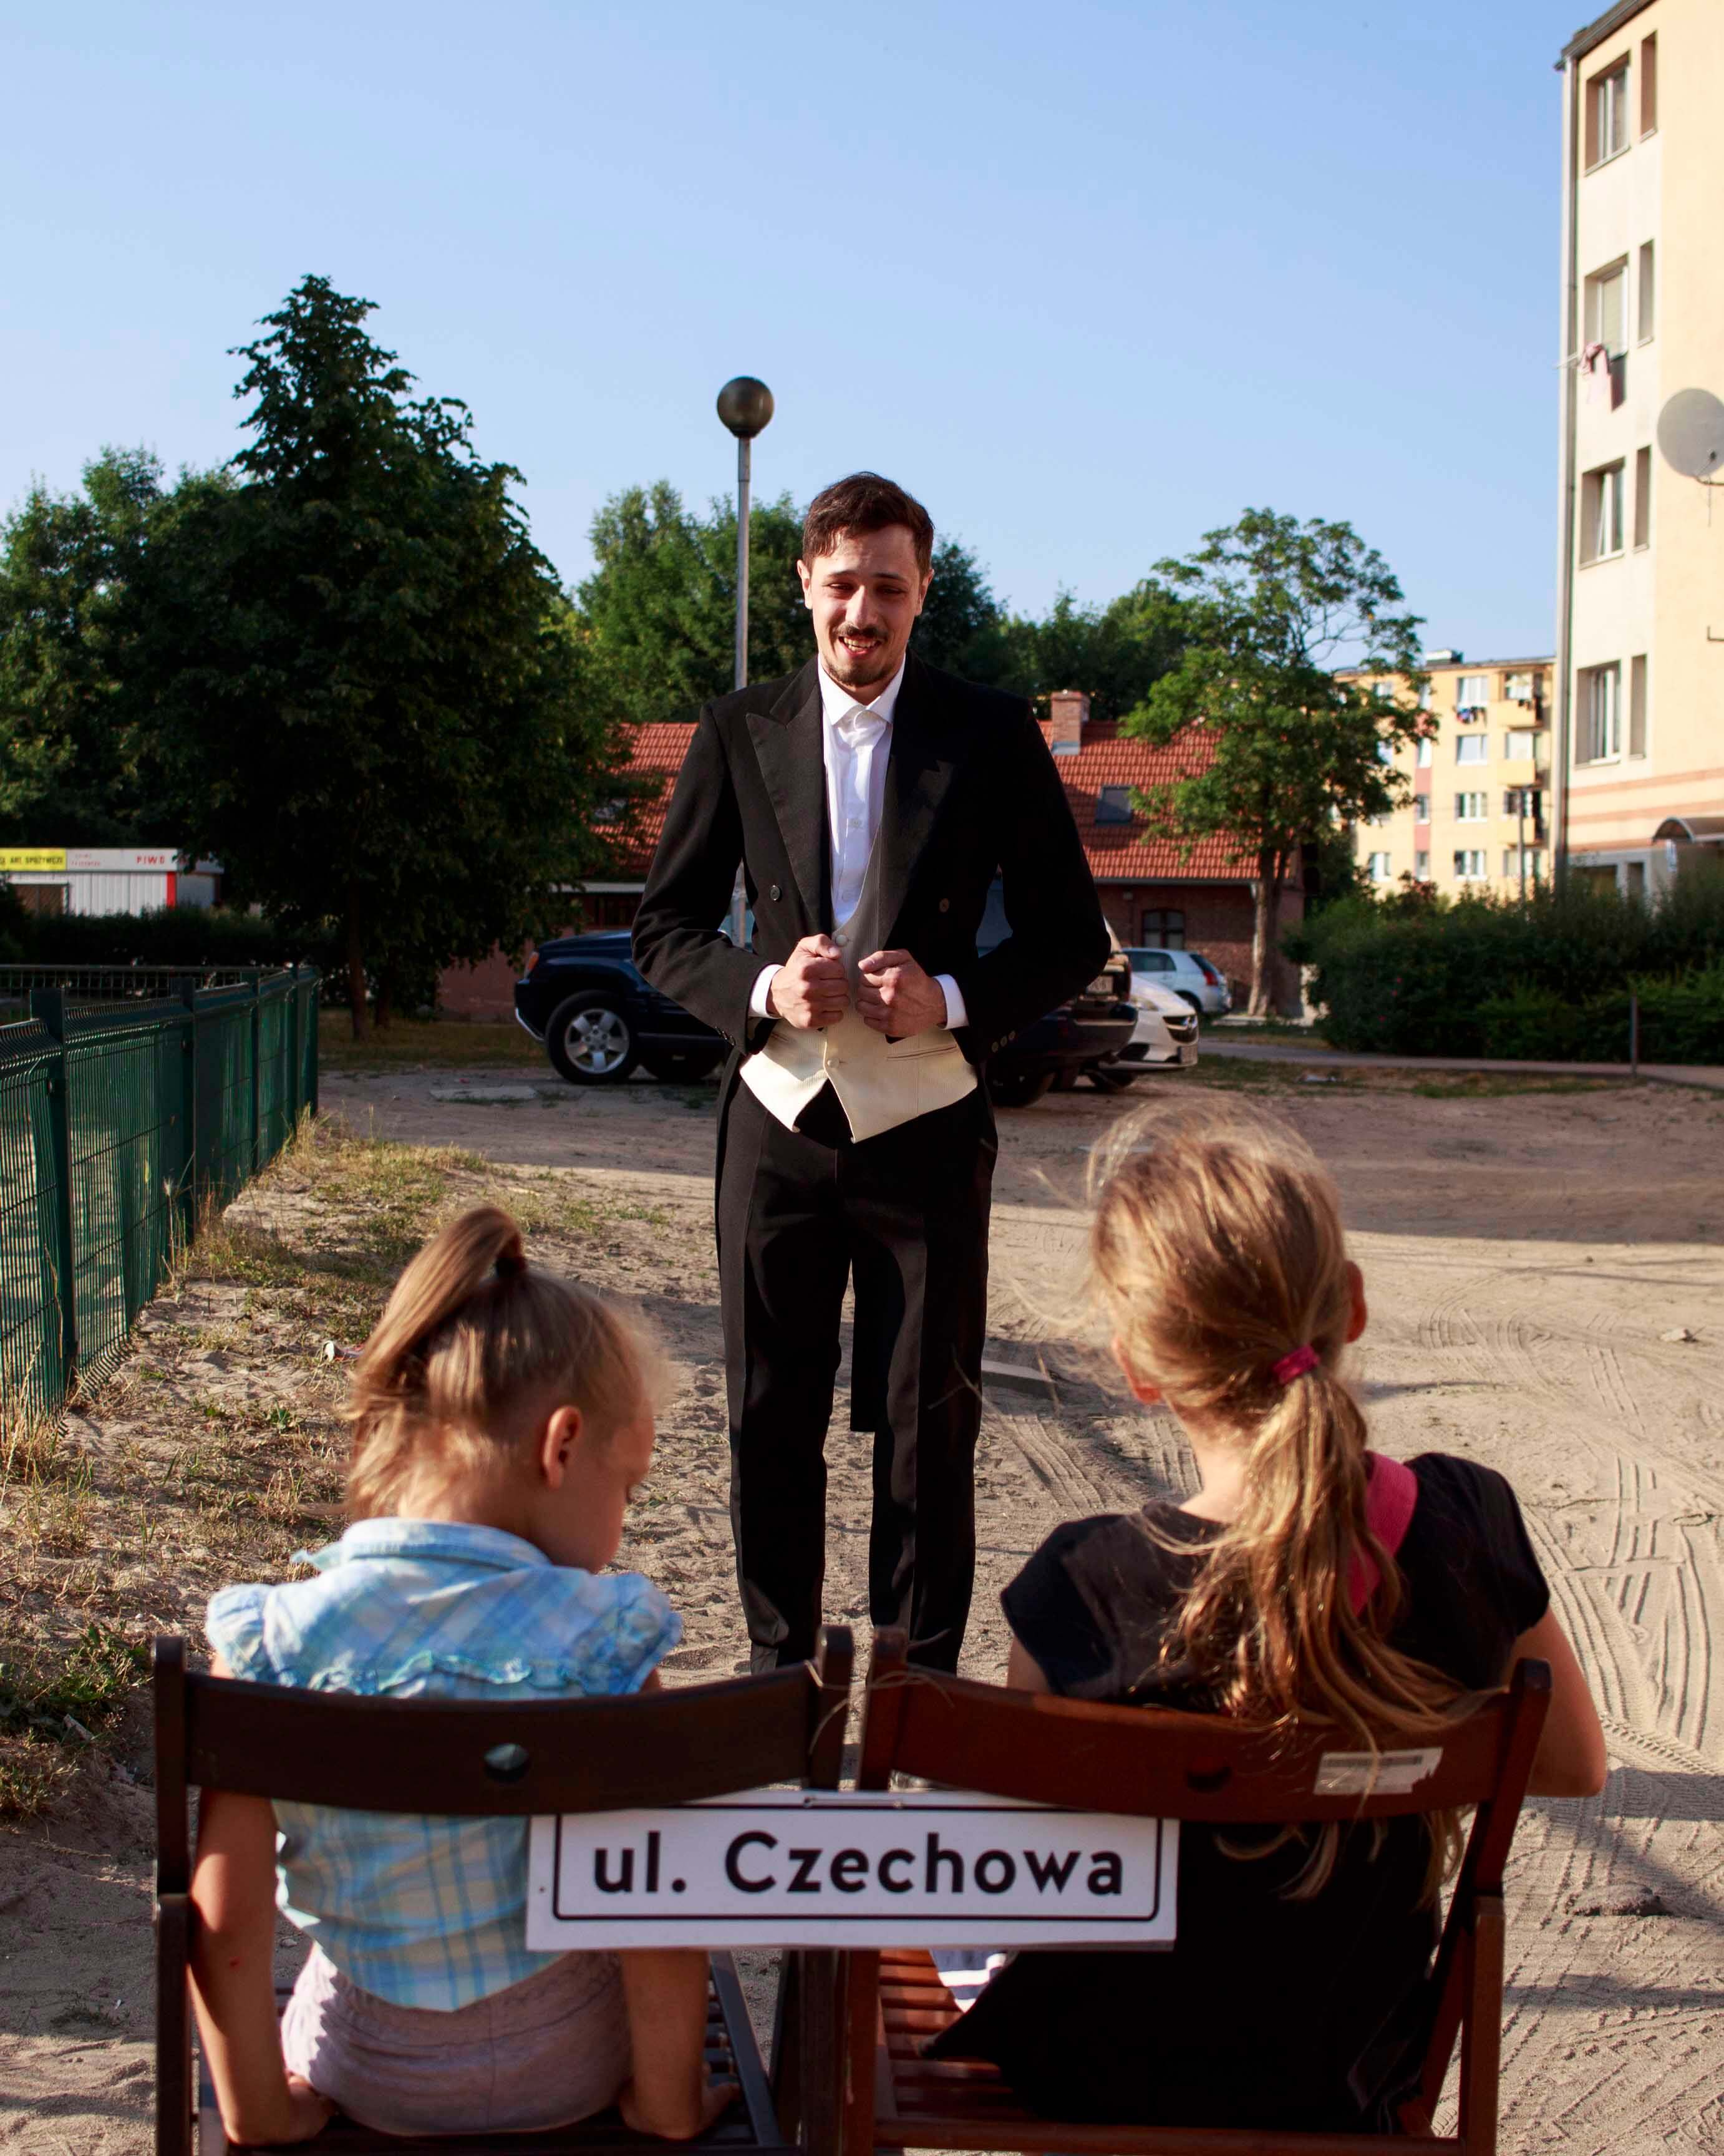 Dwie dziewczynki siedzą na krzesłach z podpisem ul. Czechowa. Przed nimi stoi uśmiechnięty mężczyzna we fraku.